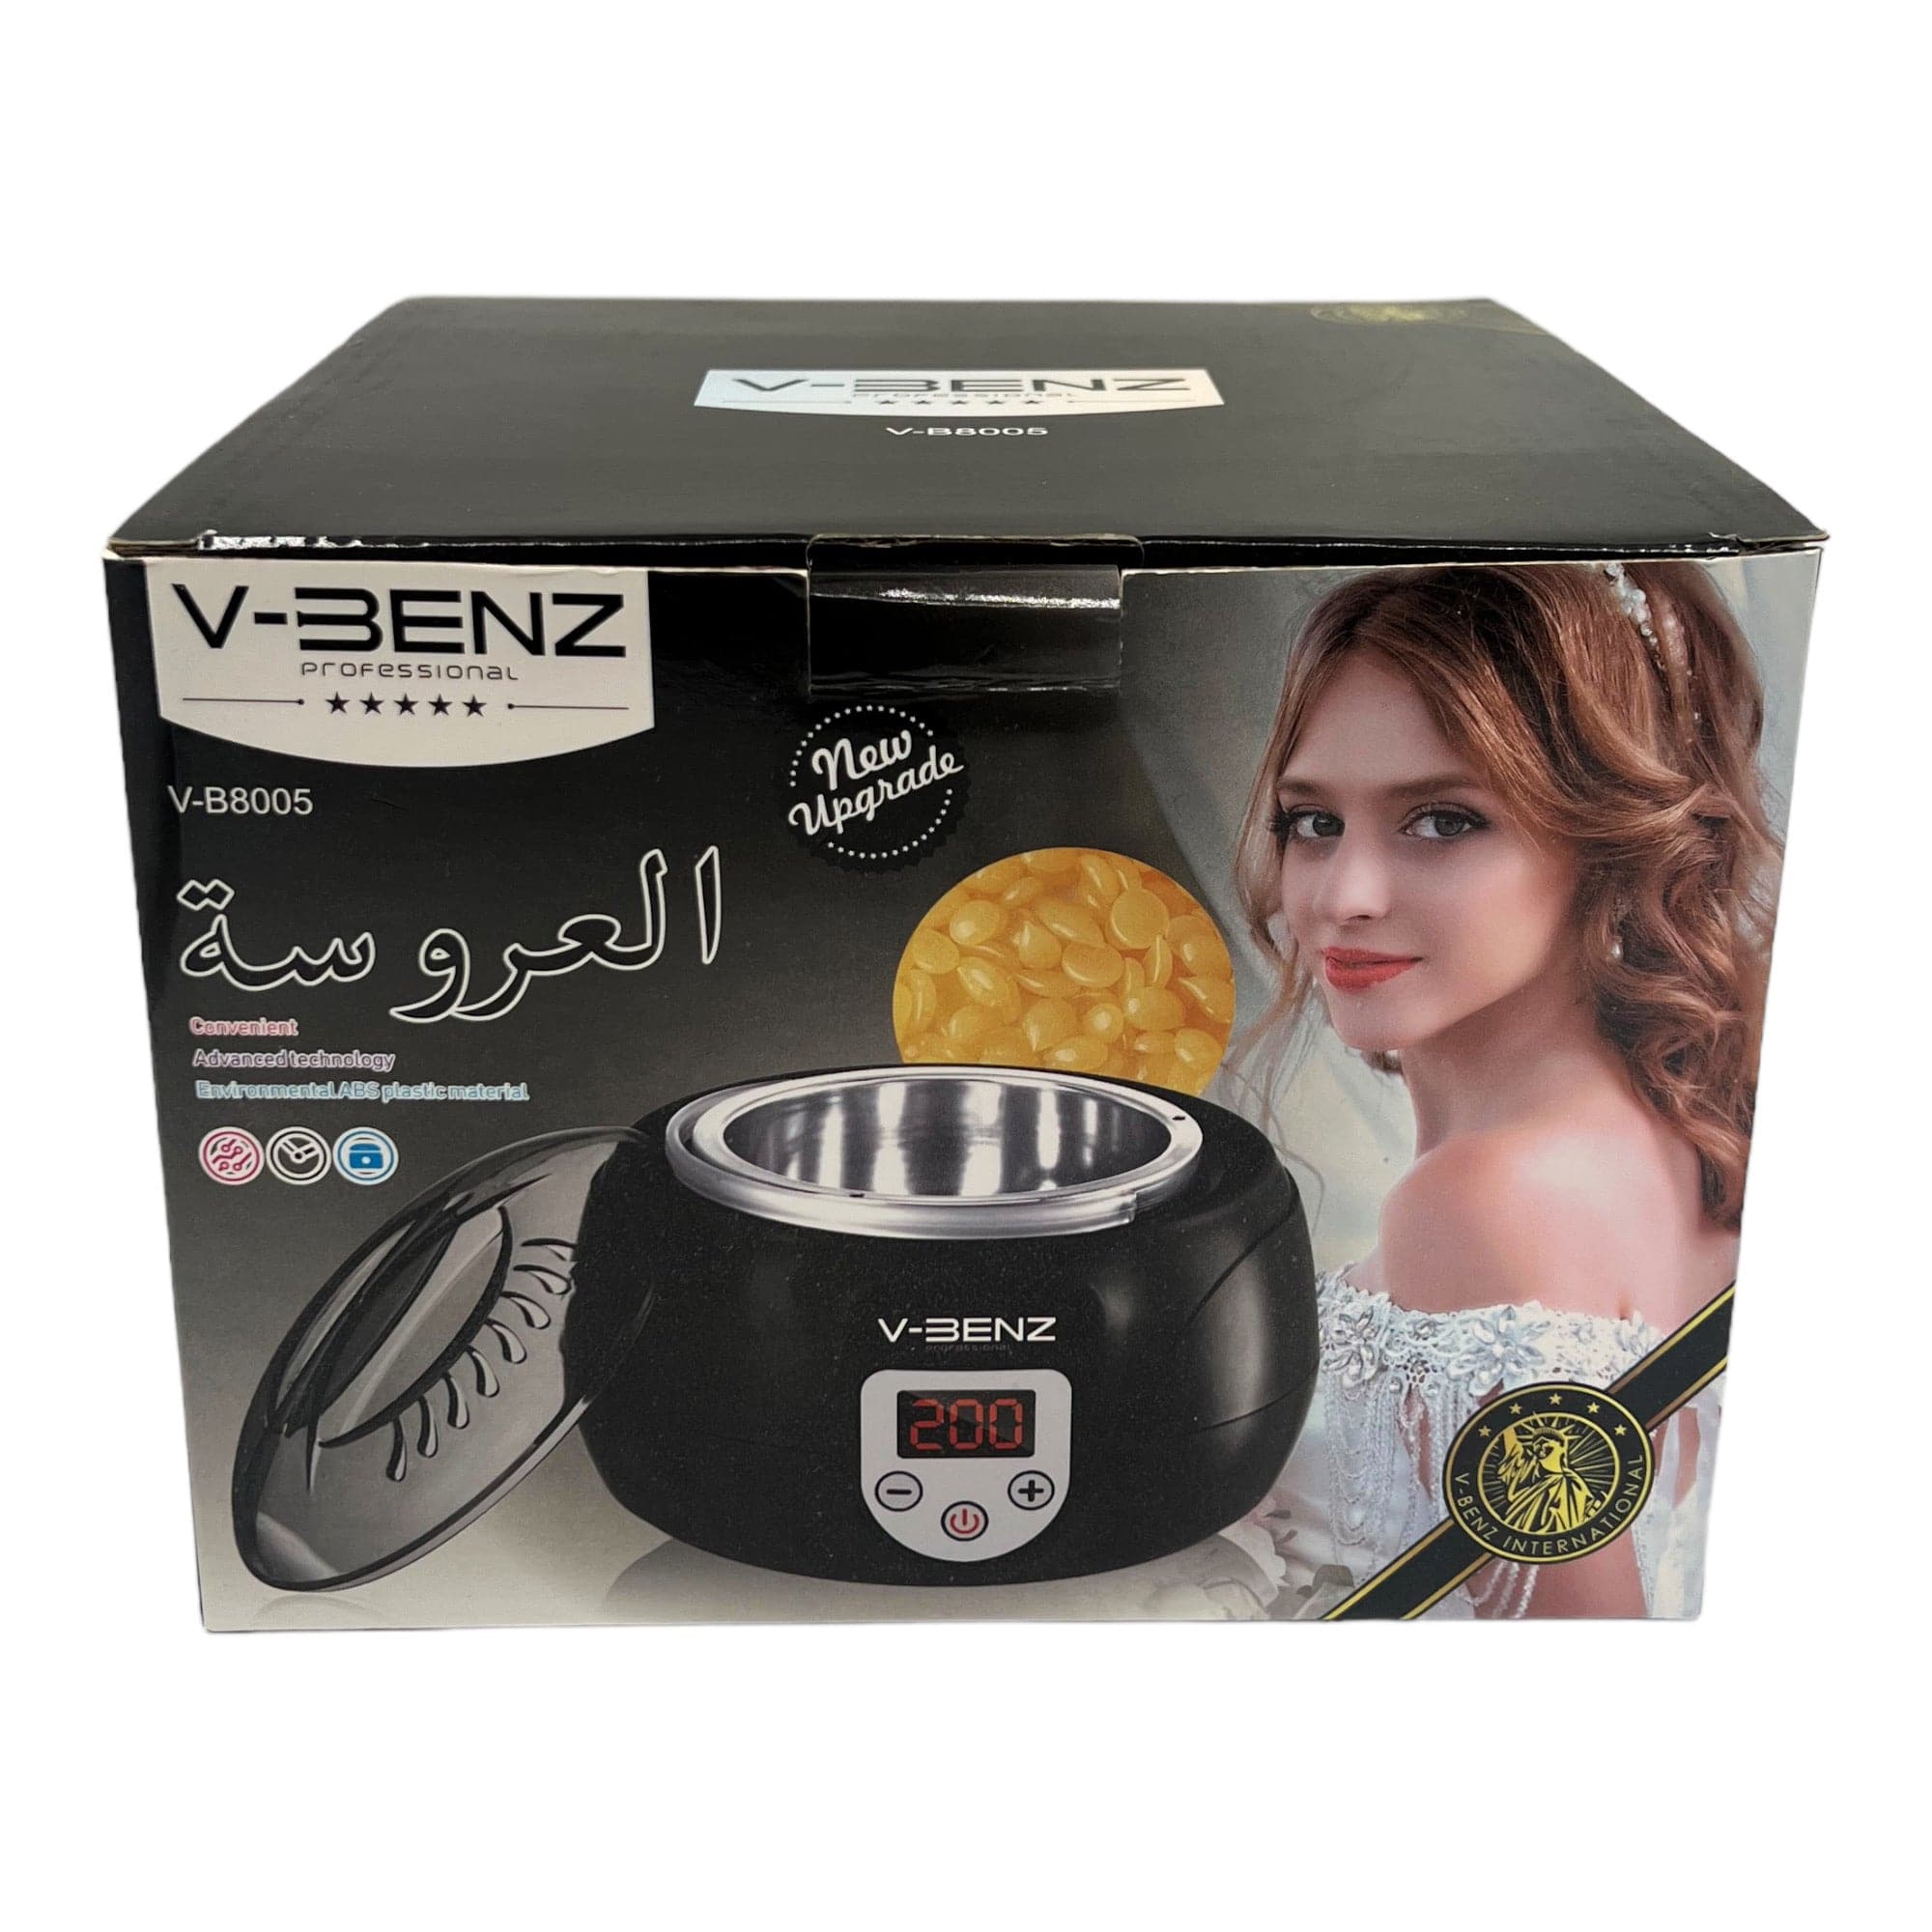 V-Benz - Wax Heater Warmer Single Pot Temperature Control